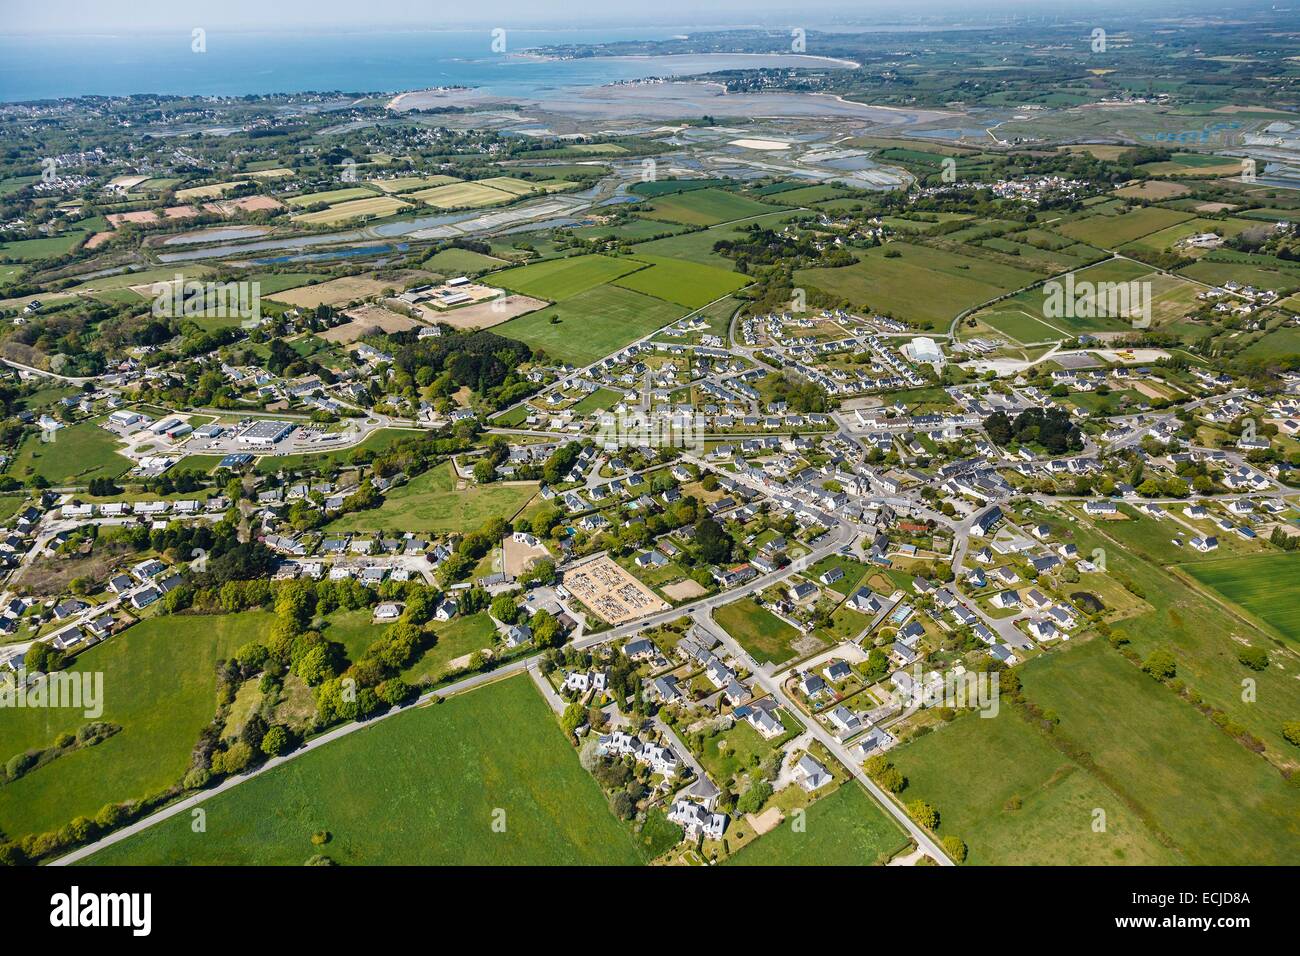 France, Loire Atlantique, Saint Molf, the village (aerial view) Stock Photo